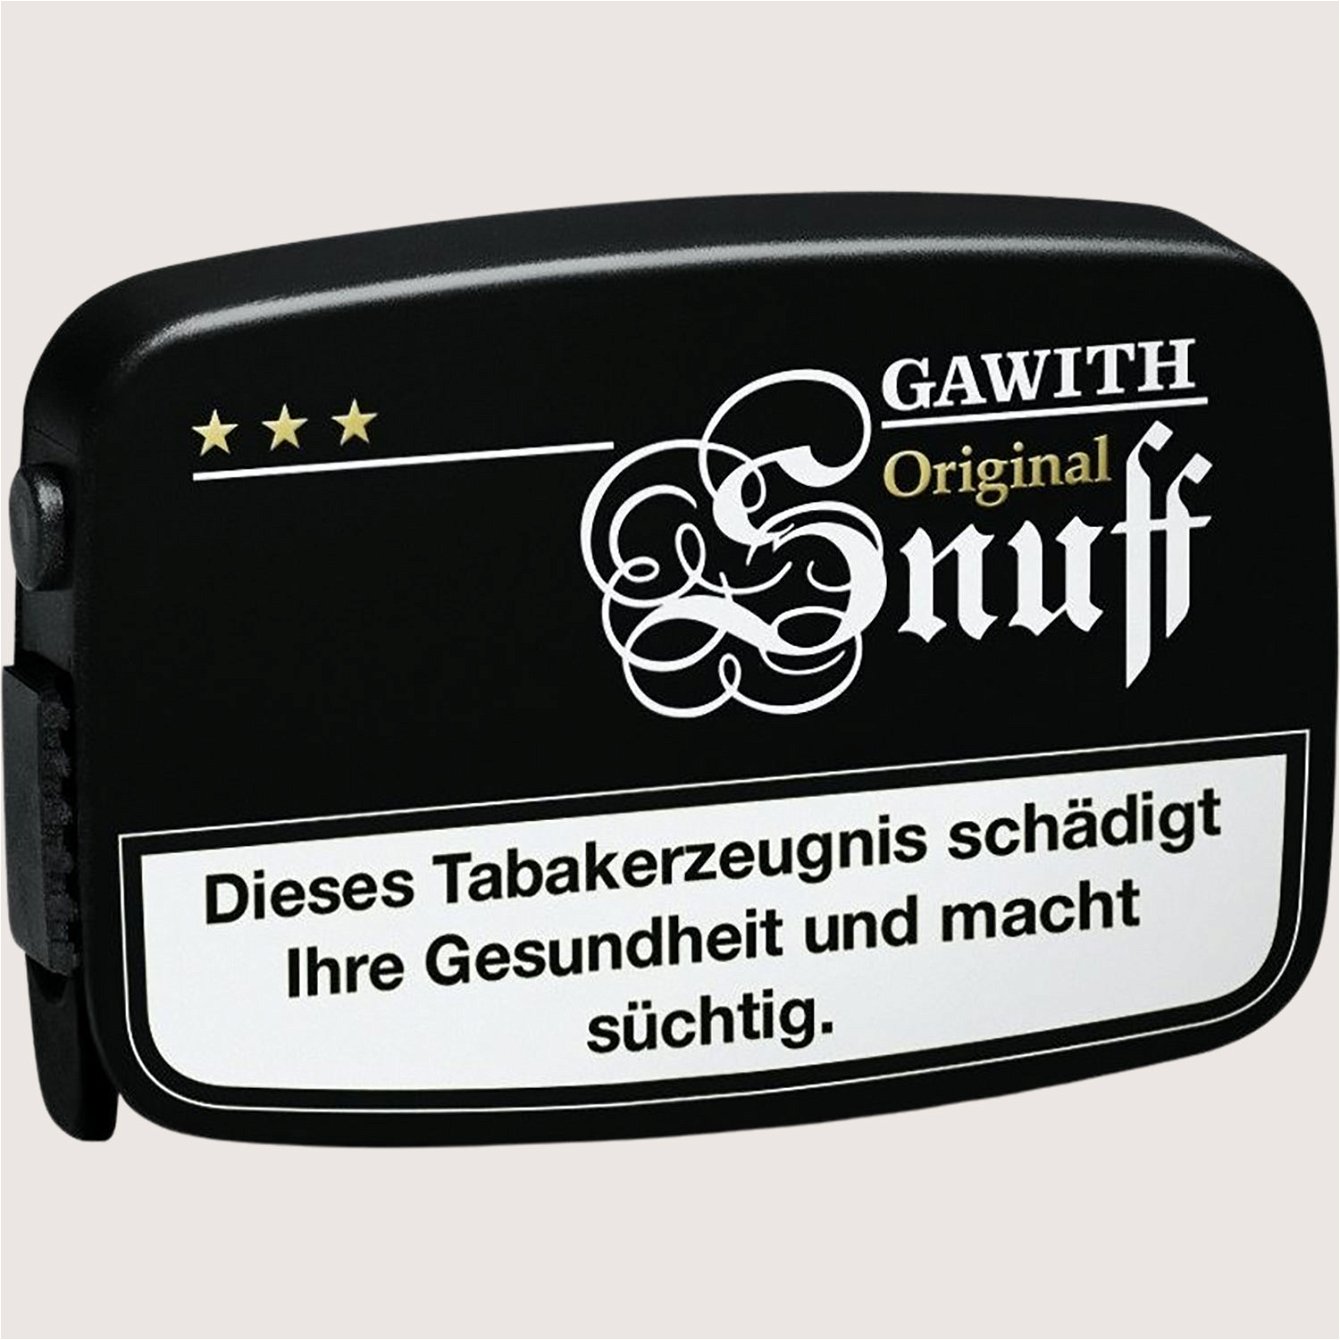 Pöschl Gawith Original Snuff